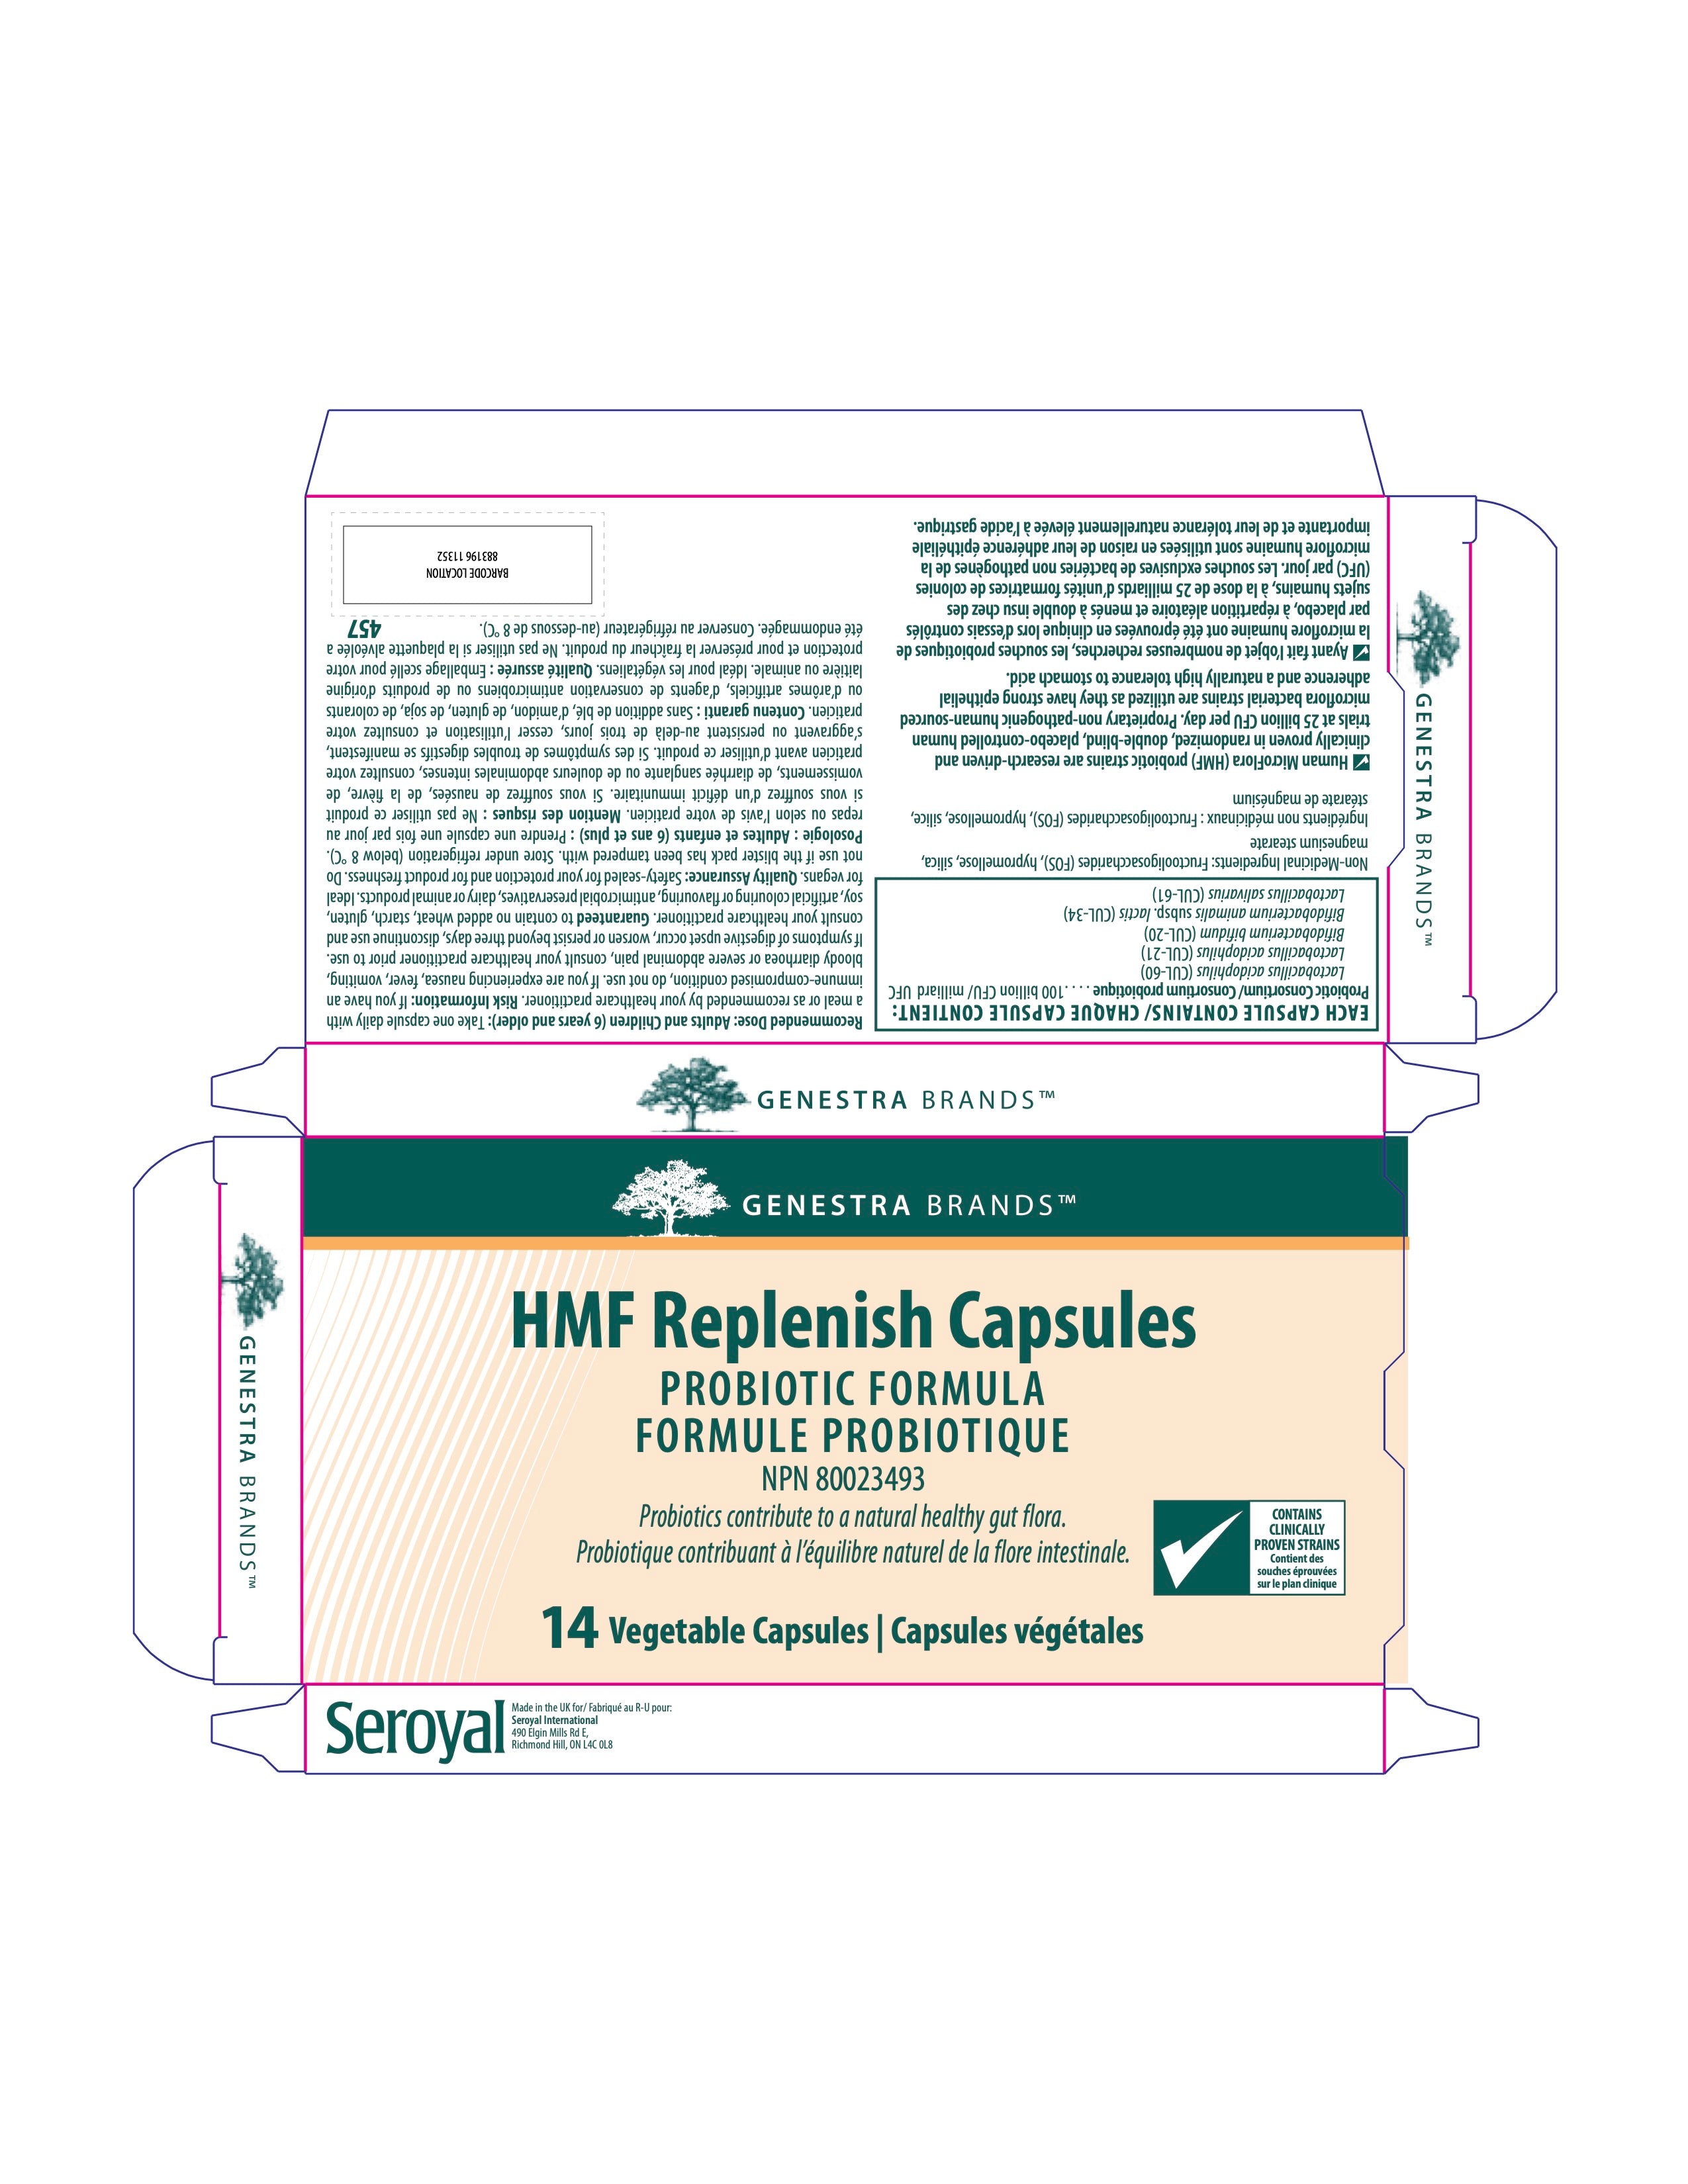 HMF Replenish Capsules